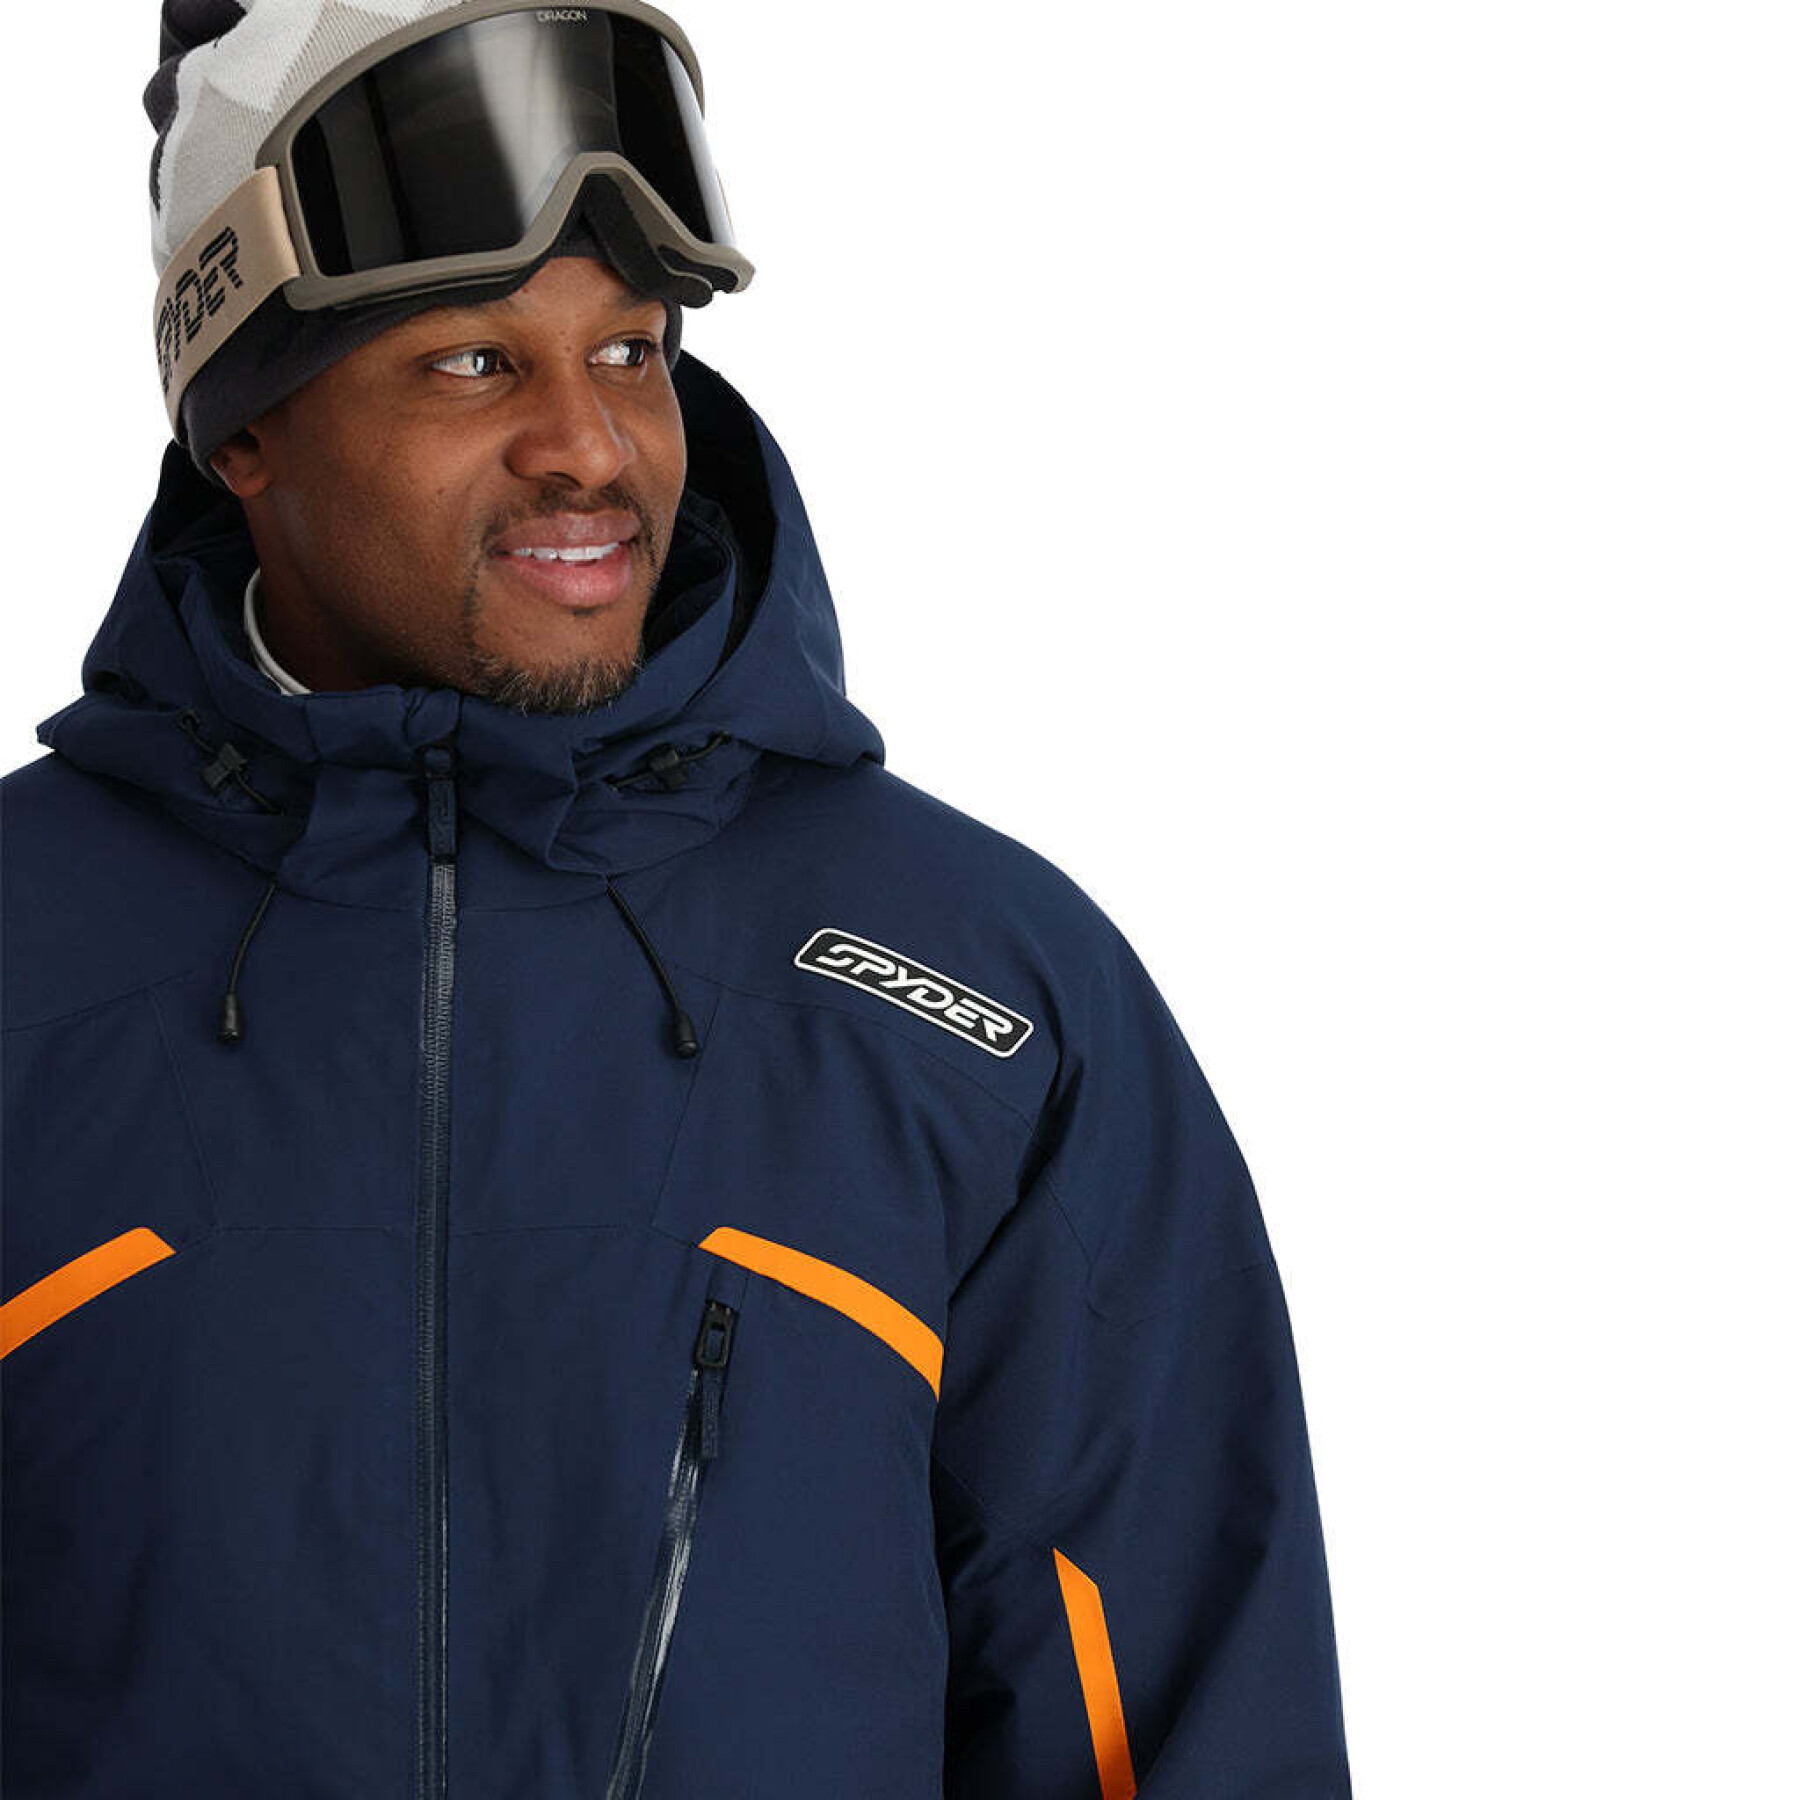 Ski jacket Spyder Leader